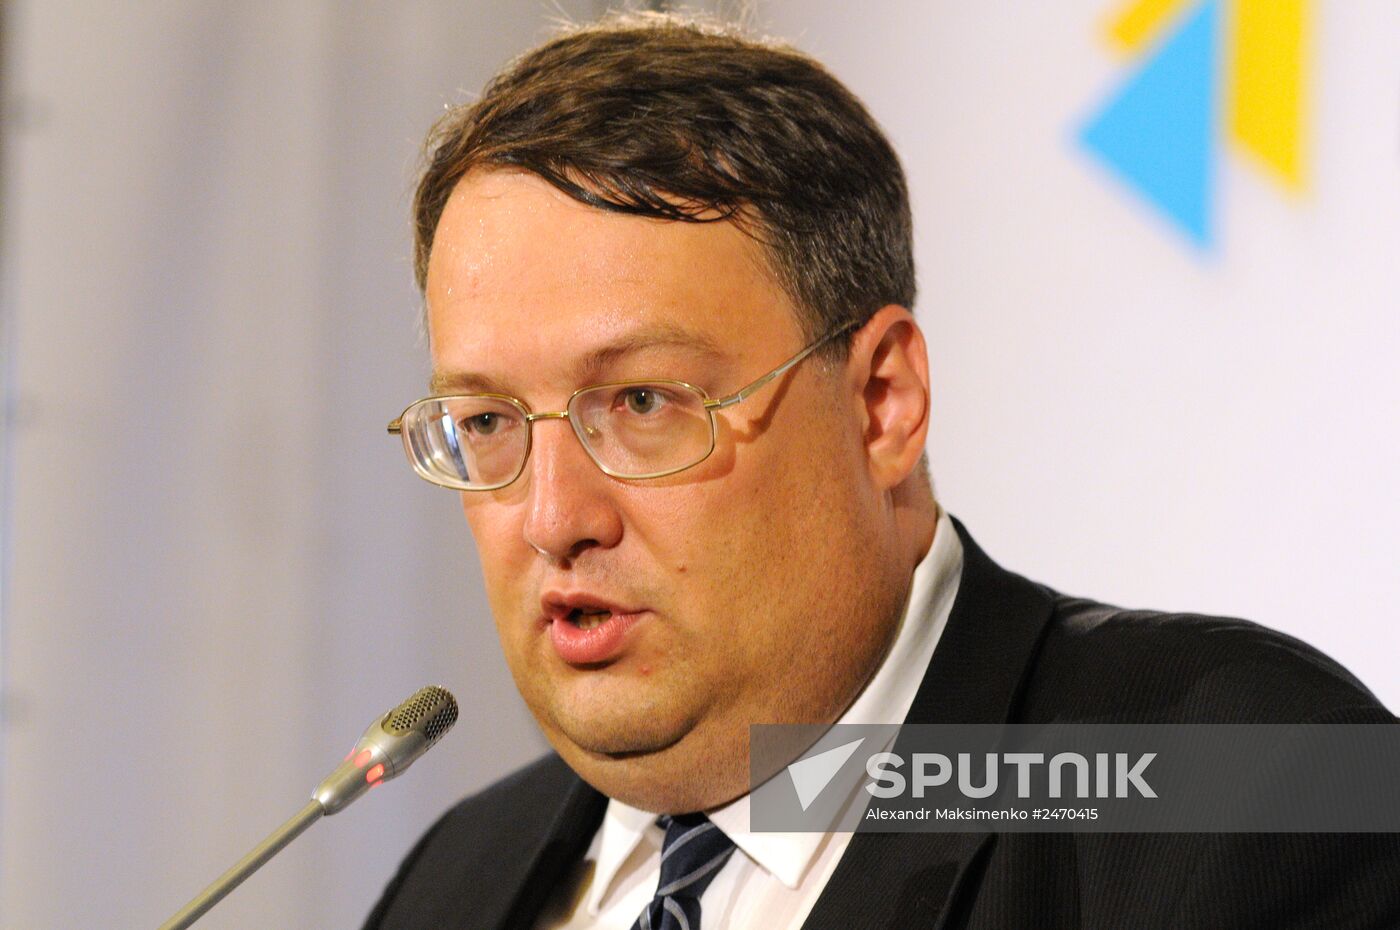 Press briefing by Anton Gerashchenko, adviser to Ukraine's Interior Minister